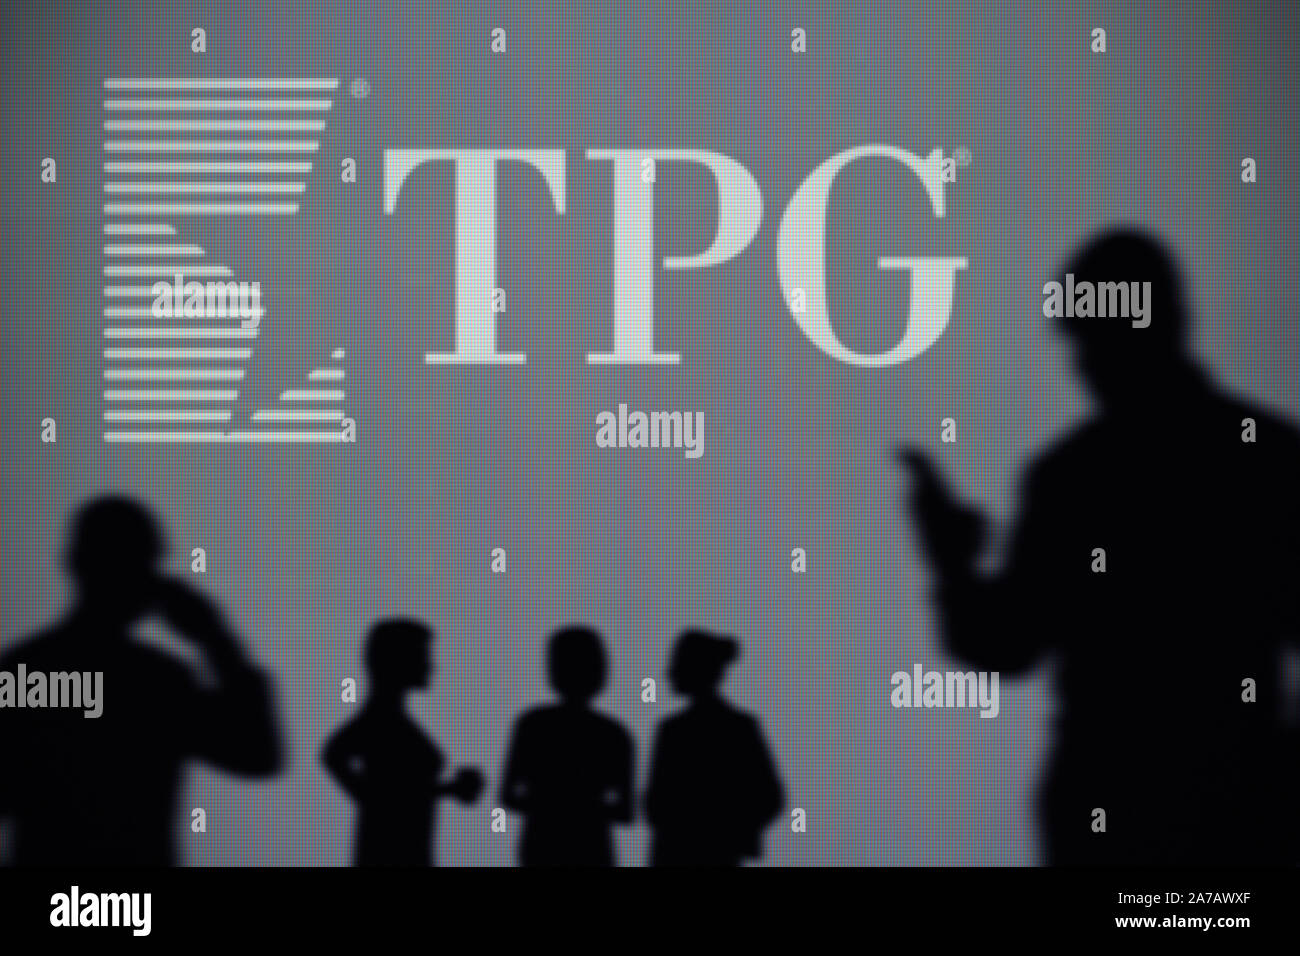 Il TPG Capital logo è visibile su uno schermo a LED in background mentre si profila una persona utilizza uno smartphone (solo uso editoriale) Foto Stock